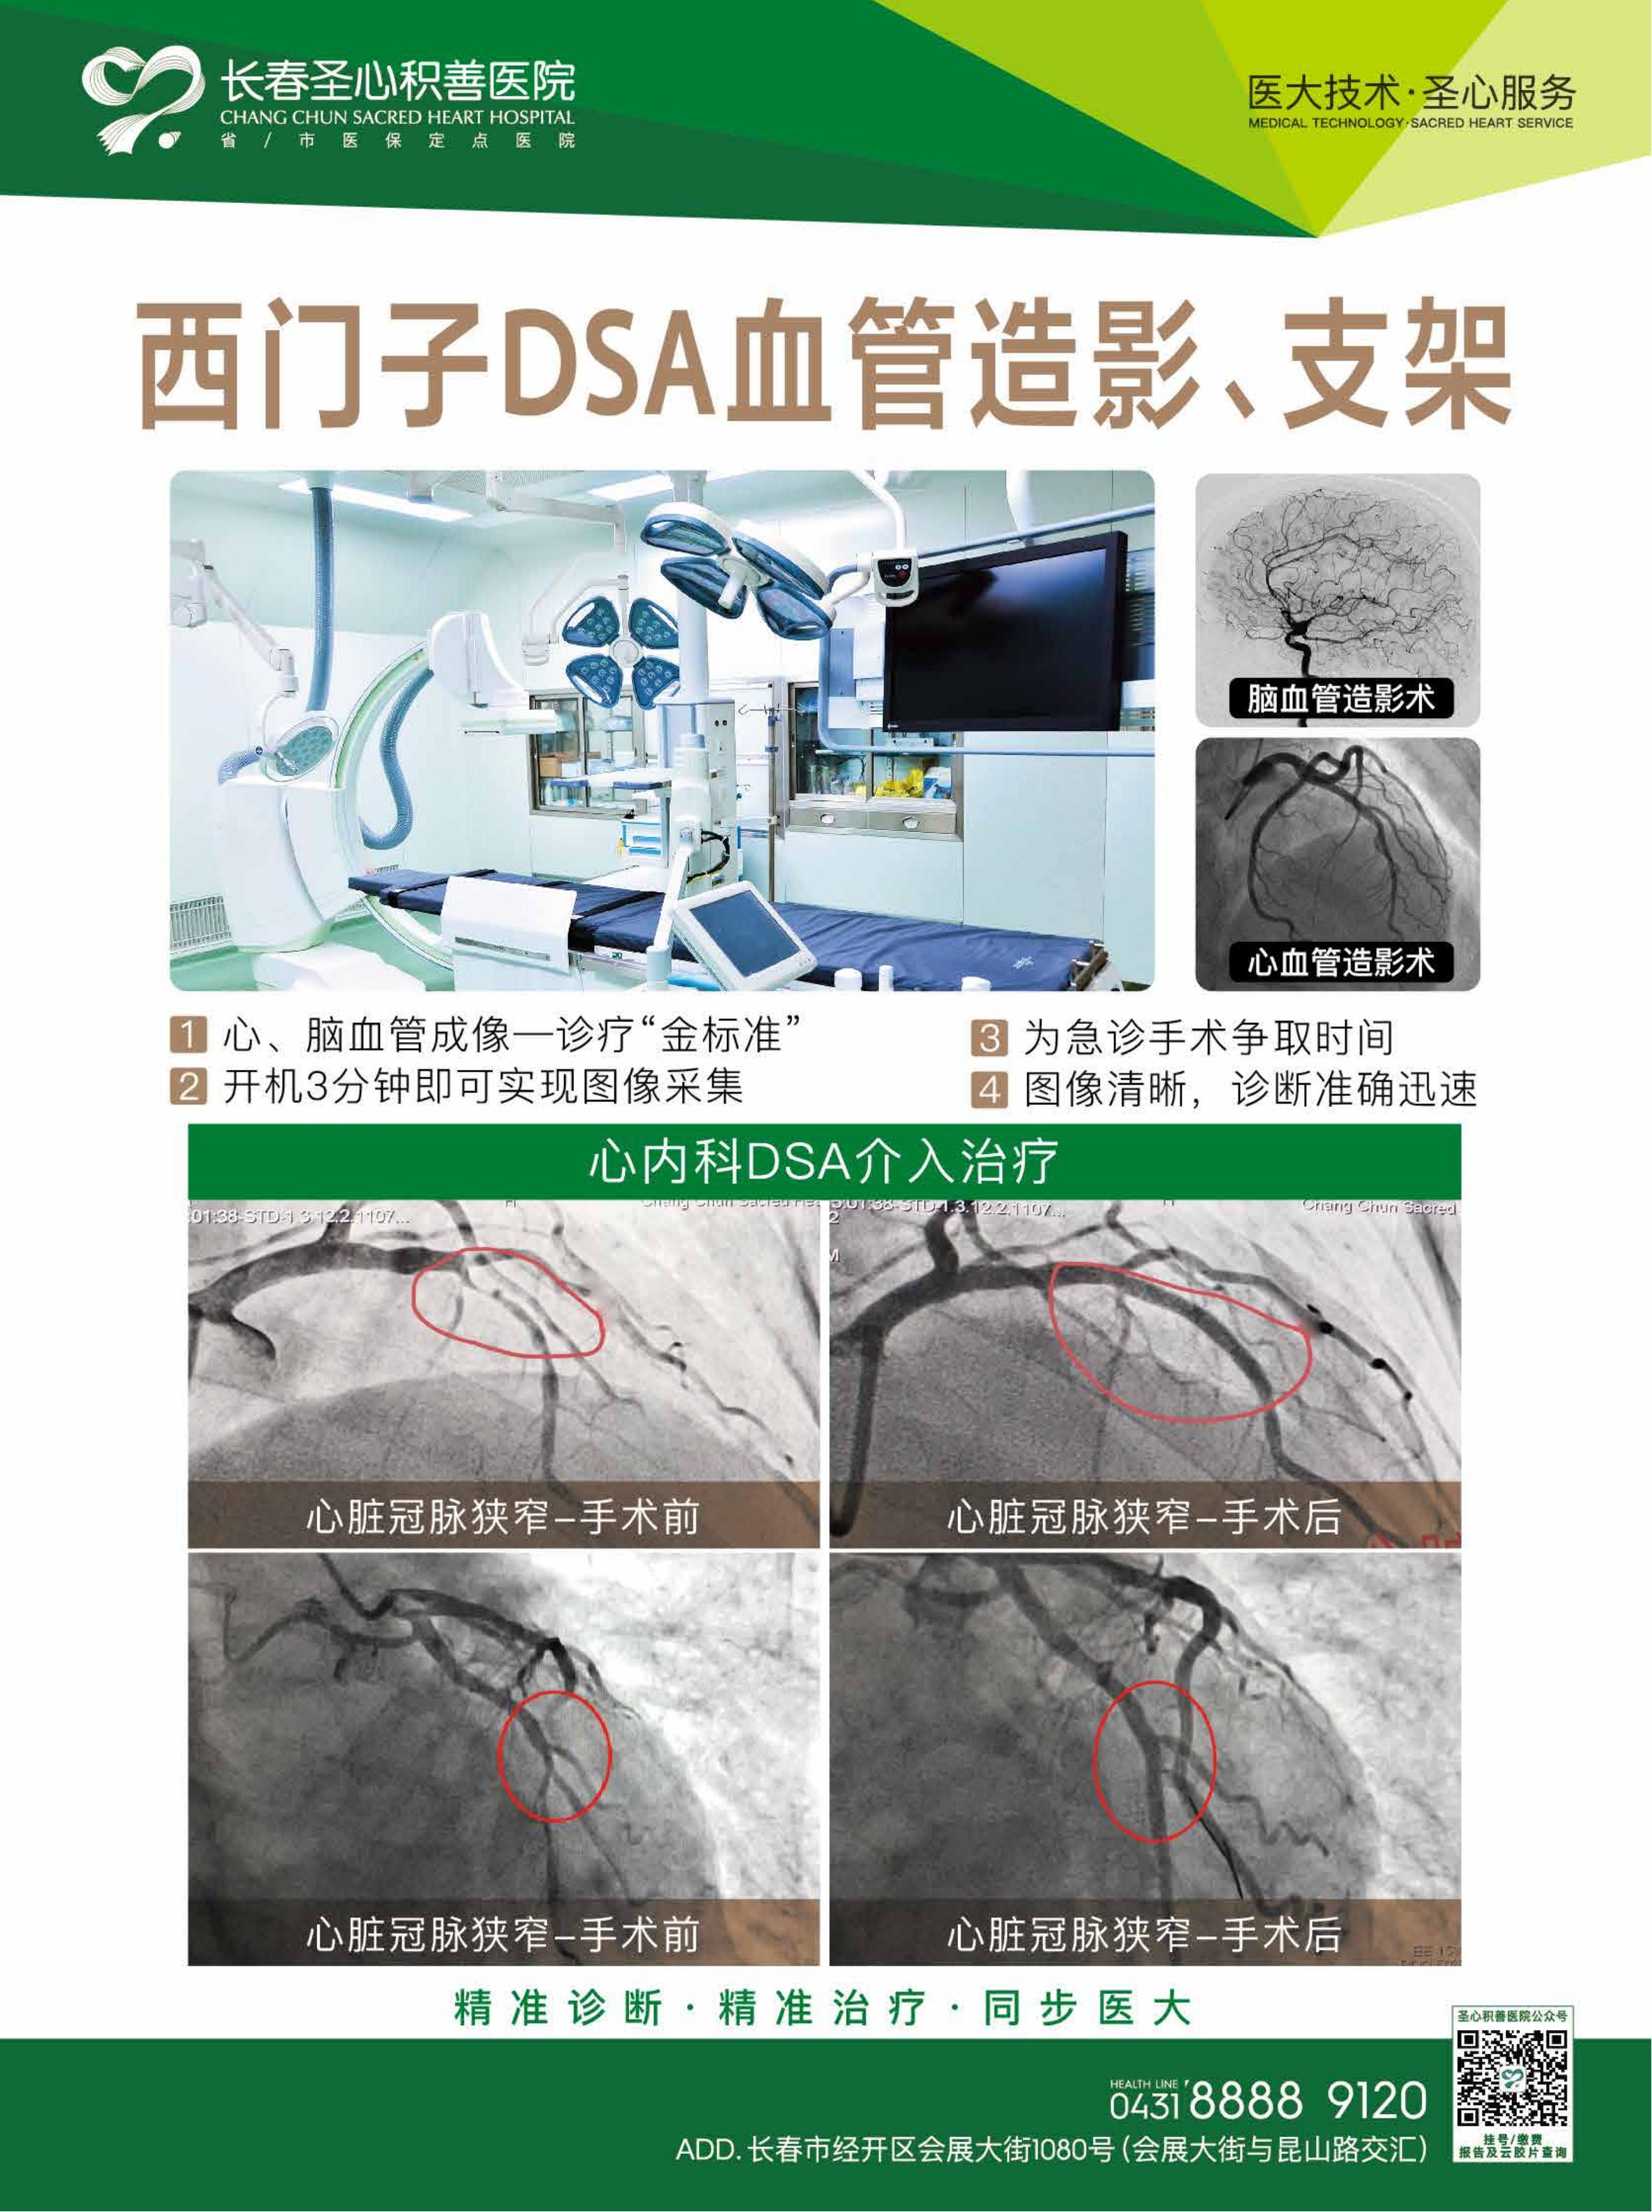 西门子DSA血管造影、支架2.jpg